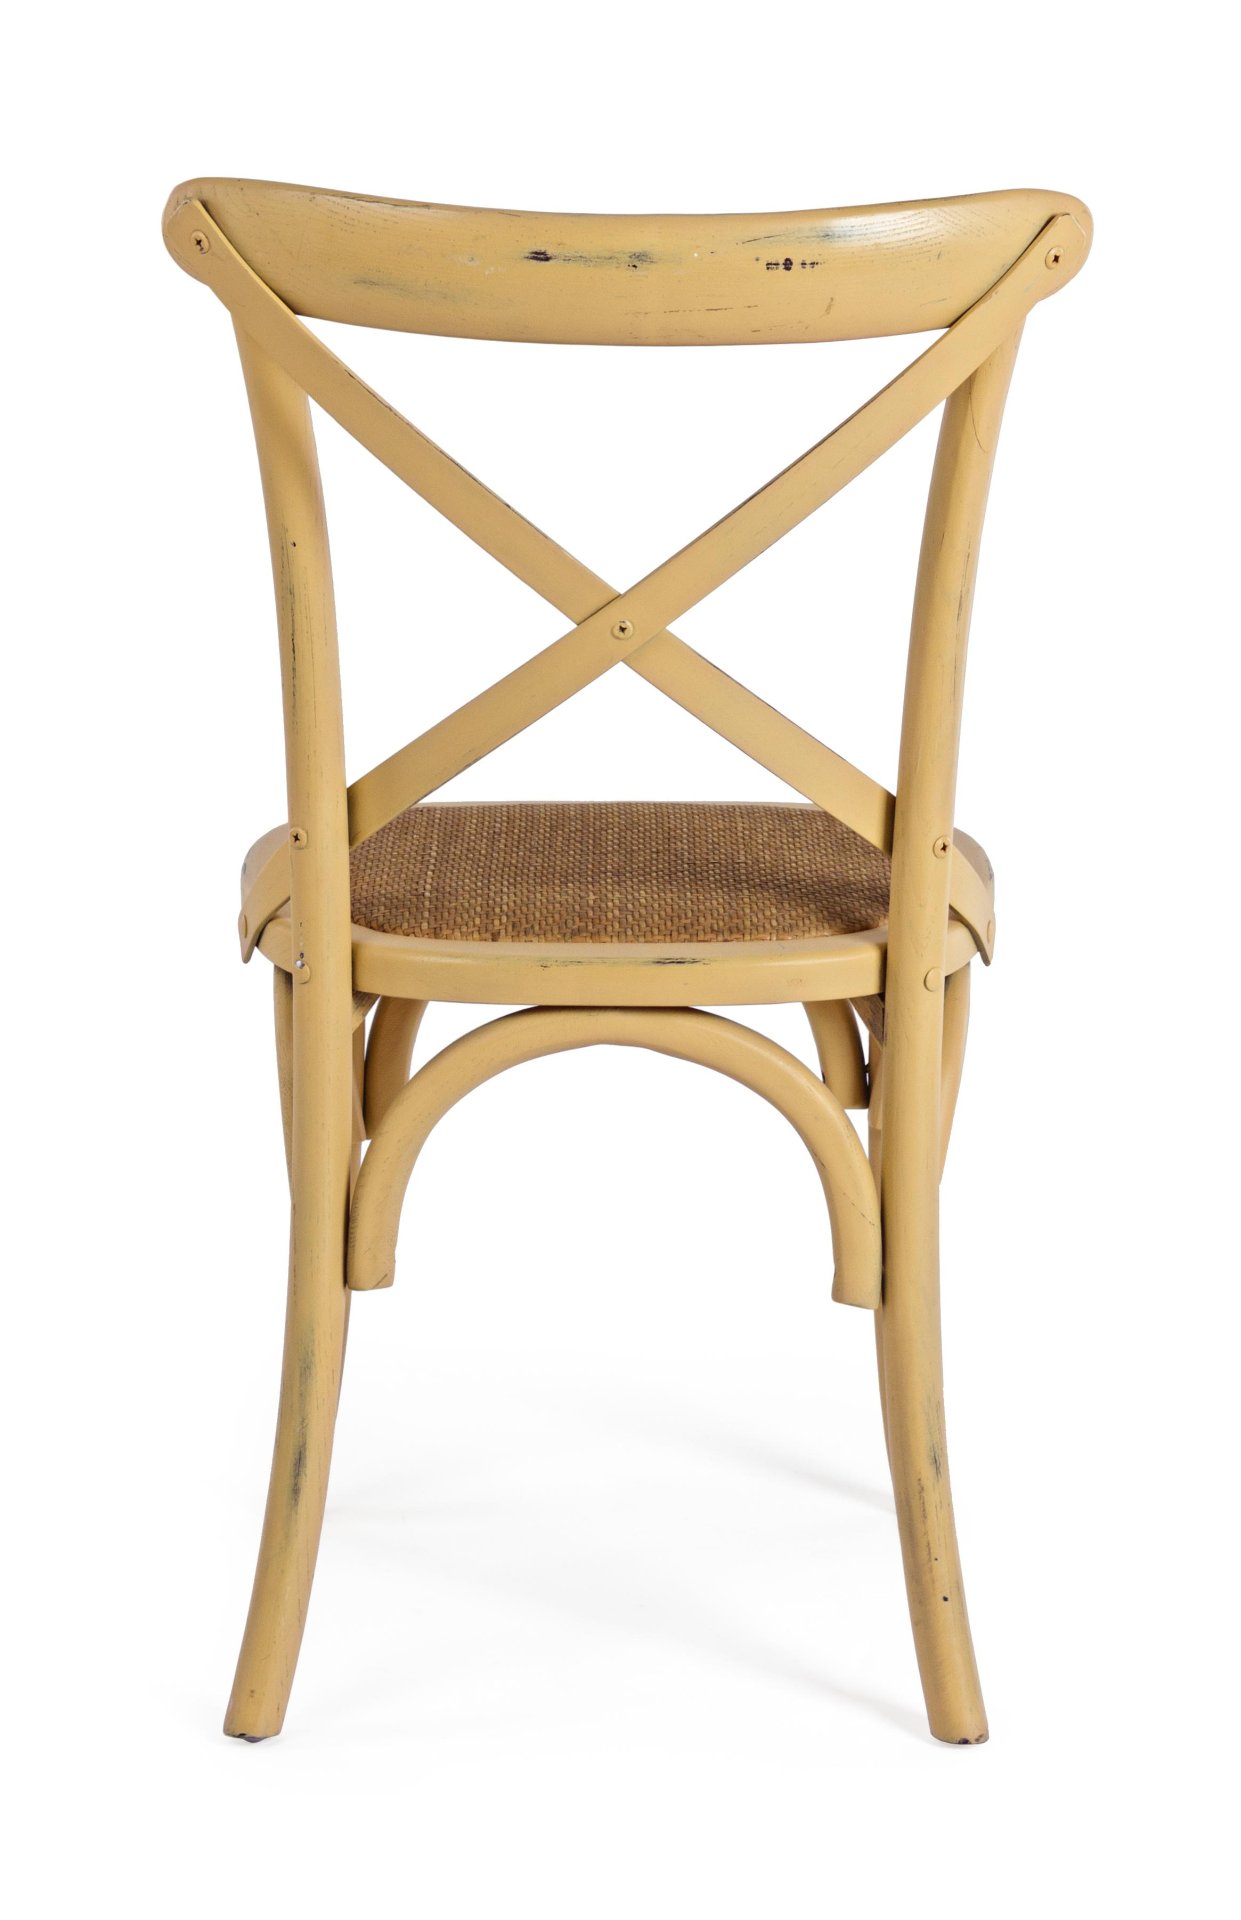 Der Stuhl Cross überzeugt mit seinem klassischen Design. Gefertigt wurde der Stuhl aus Ulmenholz, welches einen gelben Farbton besitzt. Die Sitz- und Rückenfläche ist aus Rattan gefertigt. Die Sitzhöhe beträgt 46 cm.